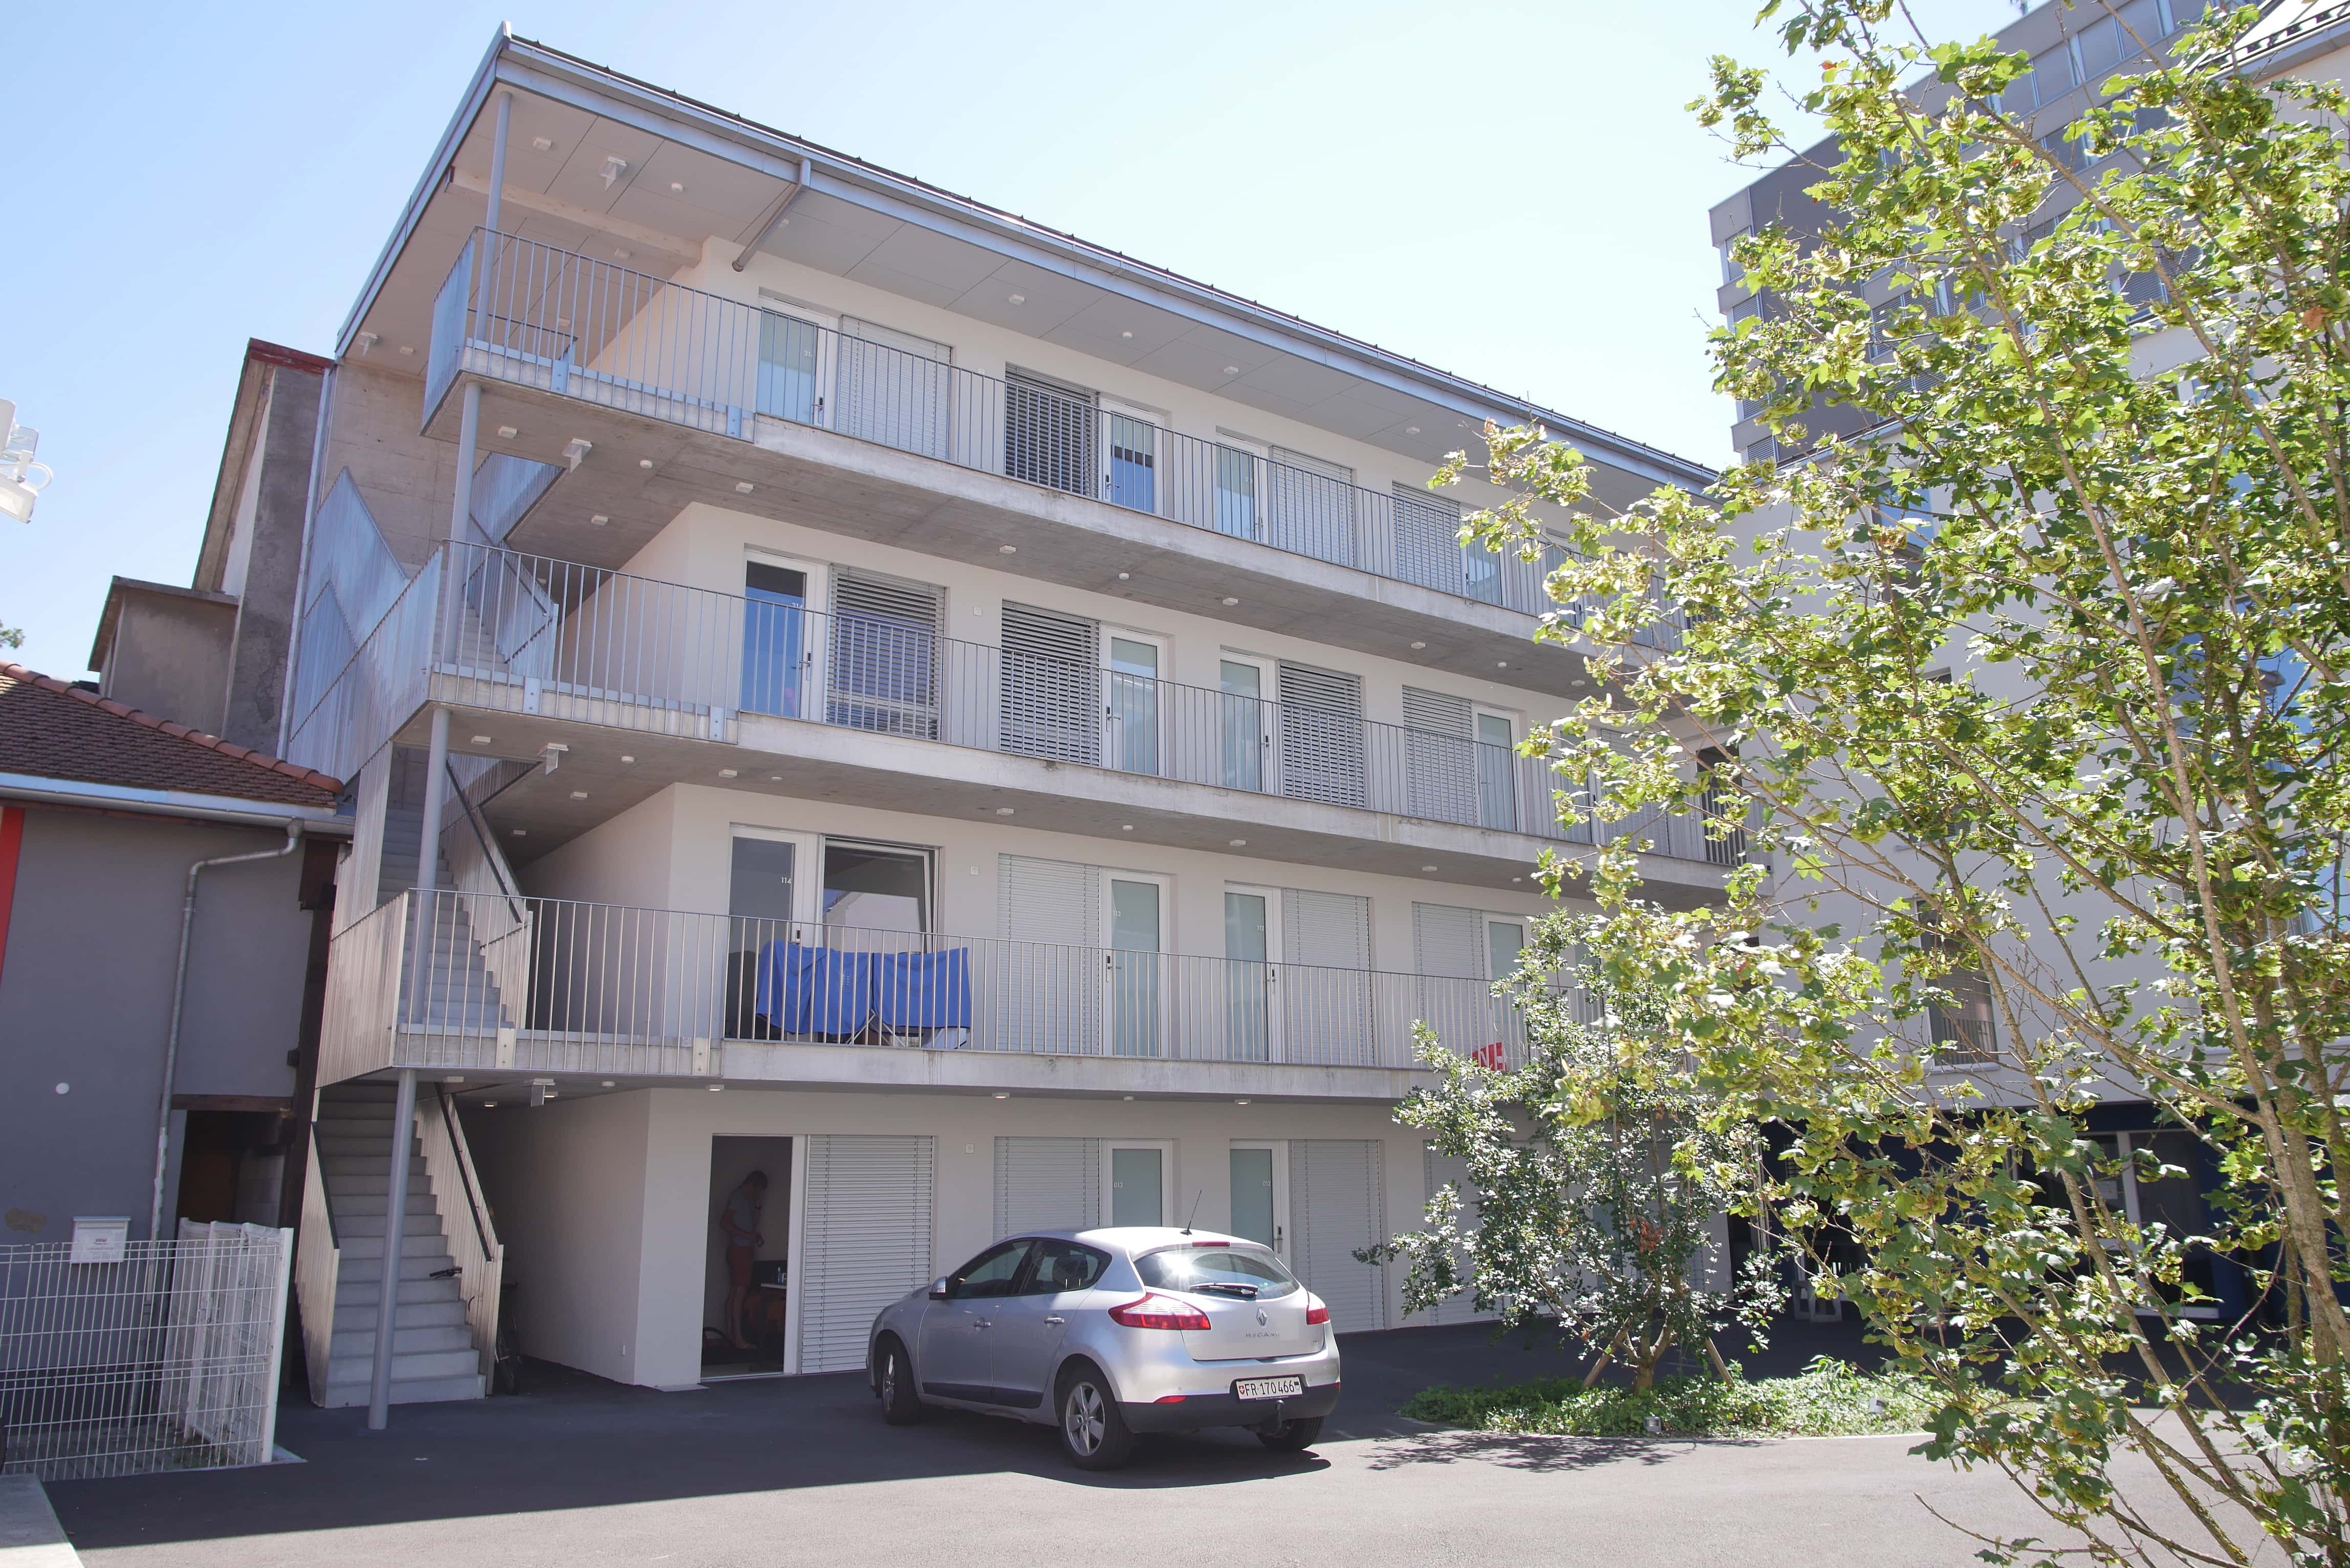 New student residence in Yverdon-les-Bains